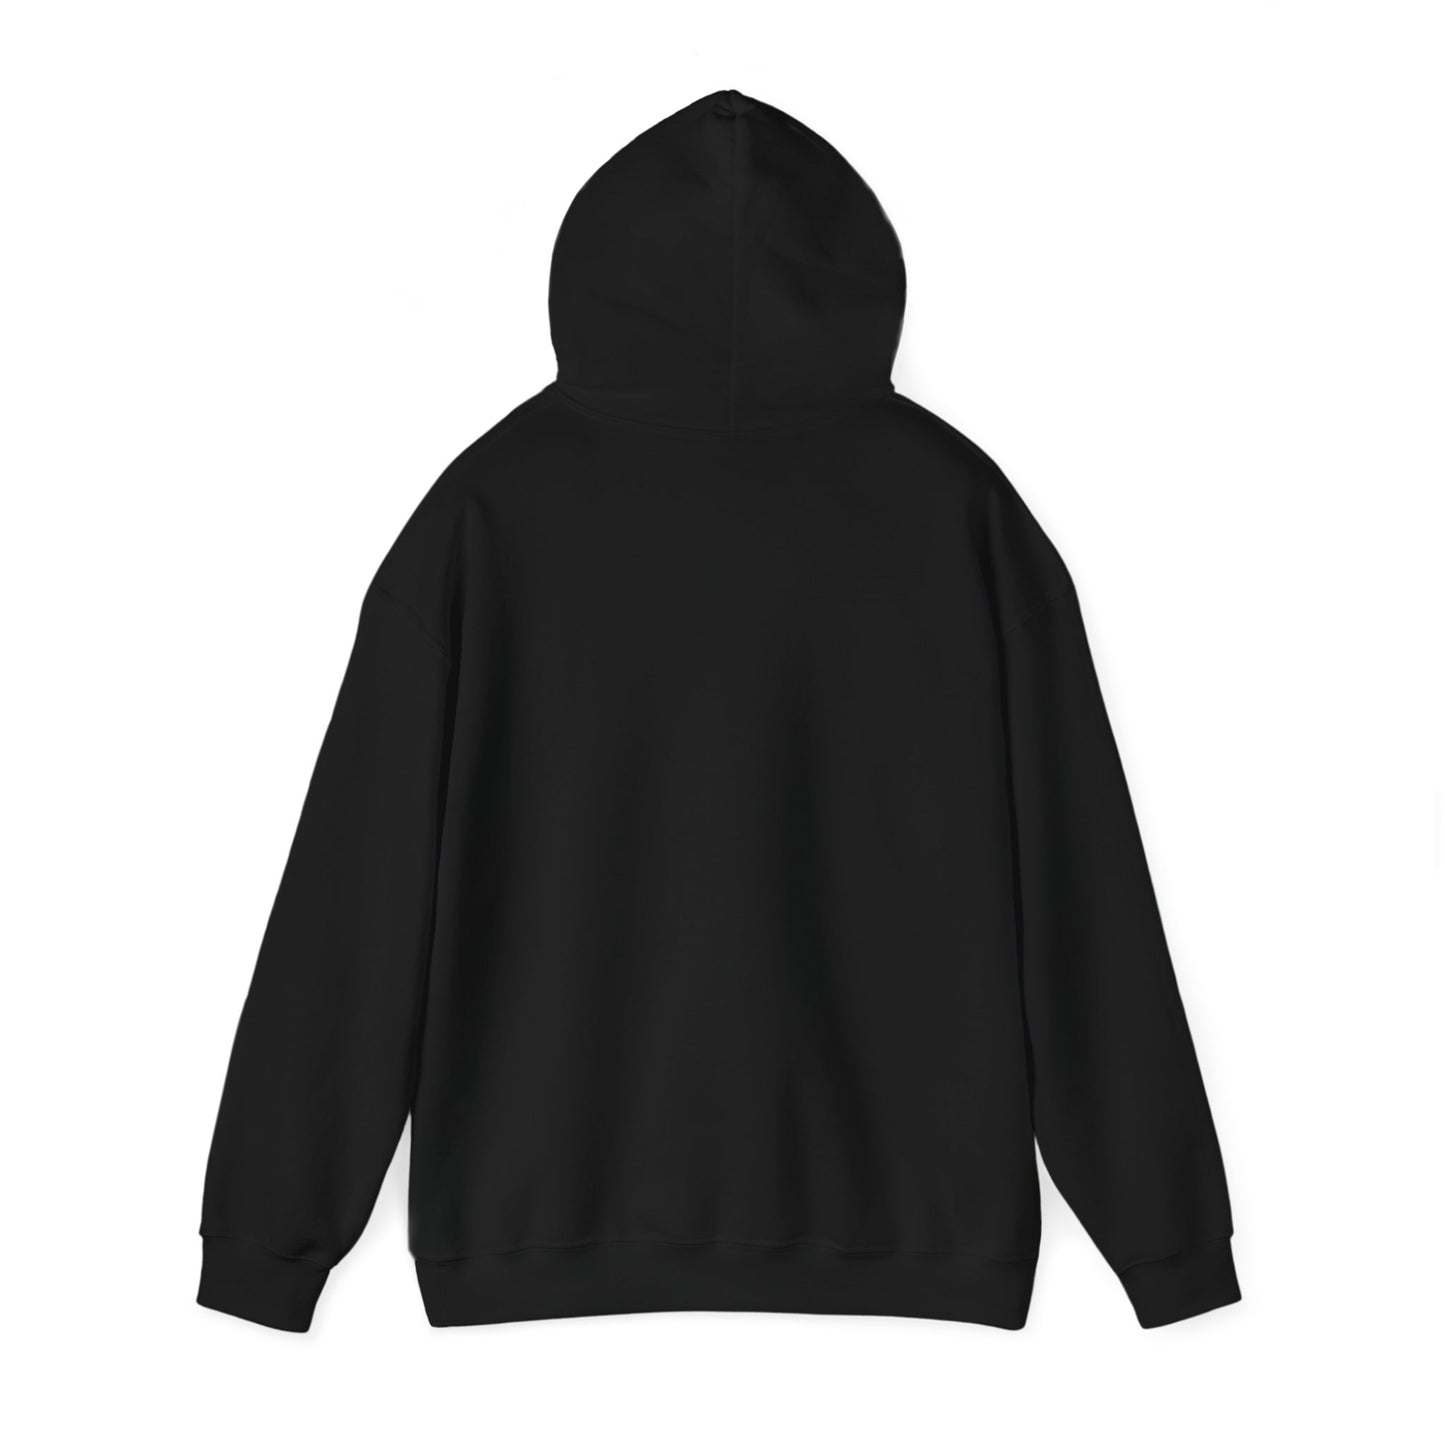 SELF-LOVE Wear IT Proudly Unisex Heavy Blend™ Hooded Sweatshirt